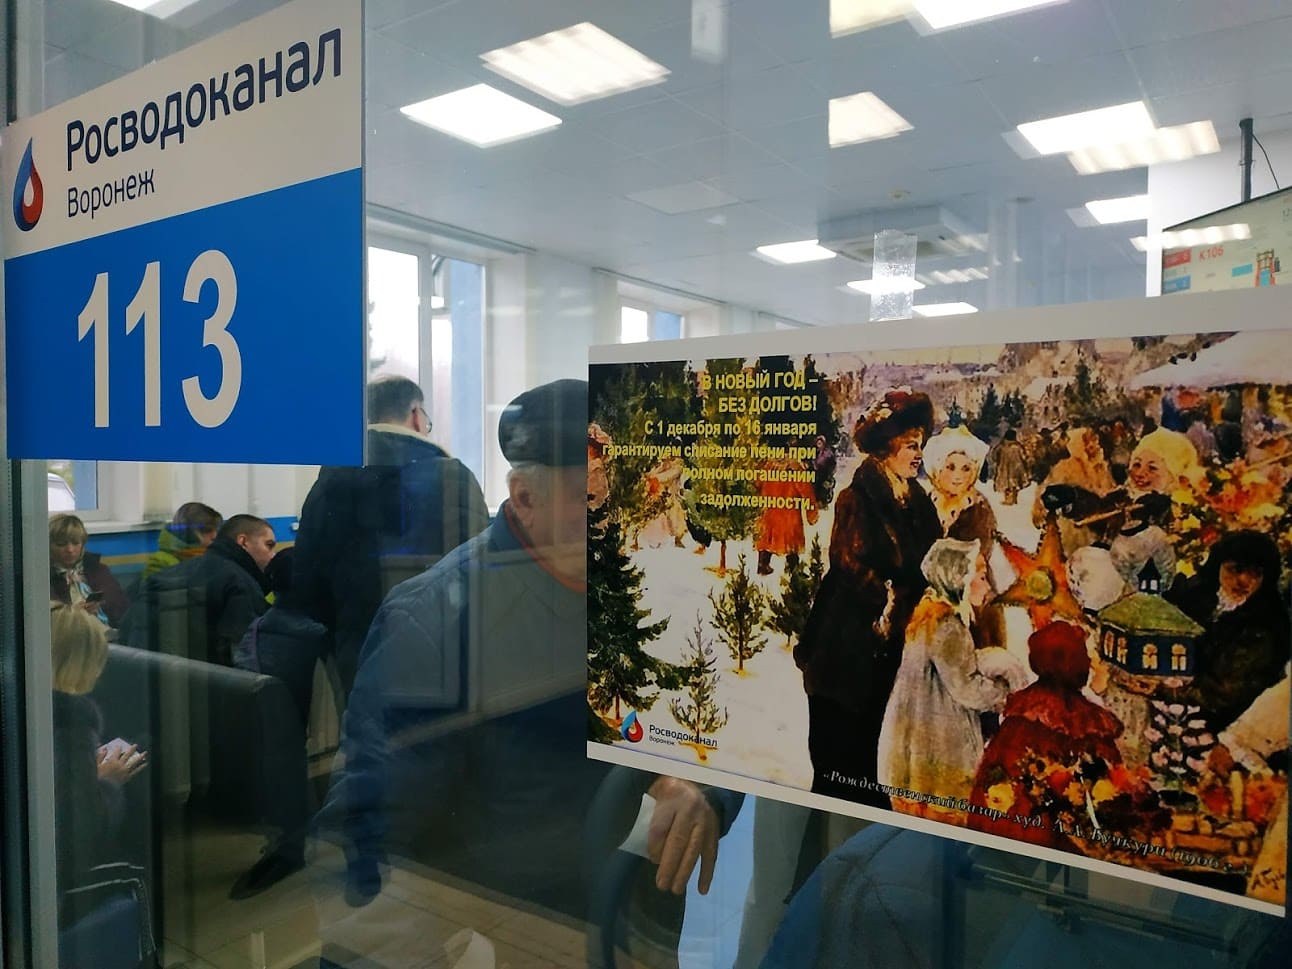 Воронежский водоканал объявил традиционную новогоднюю акцию для должников